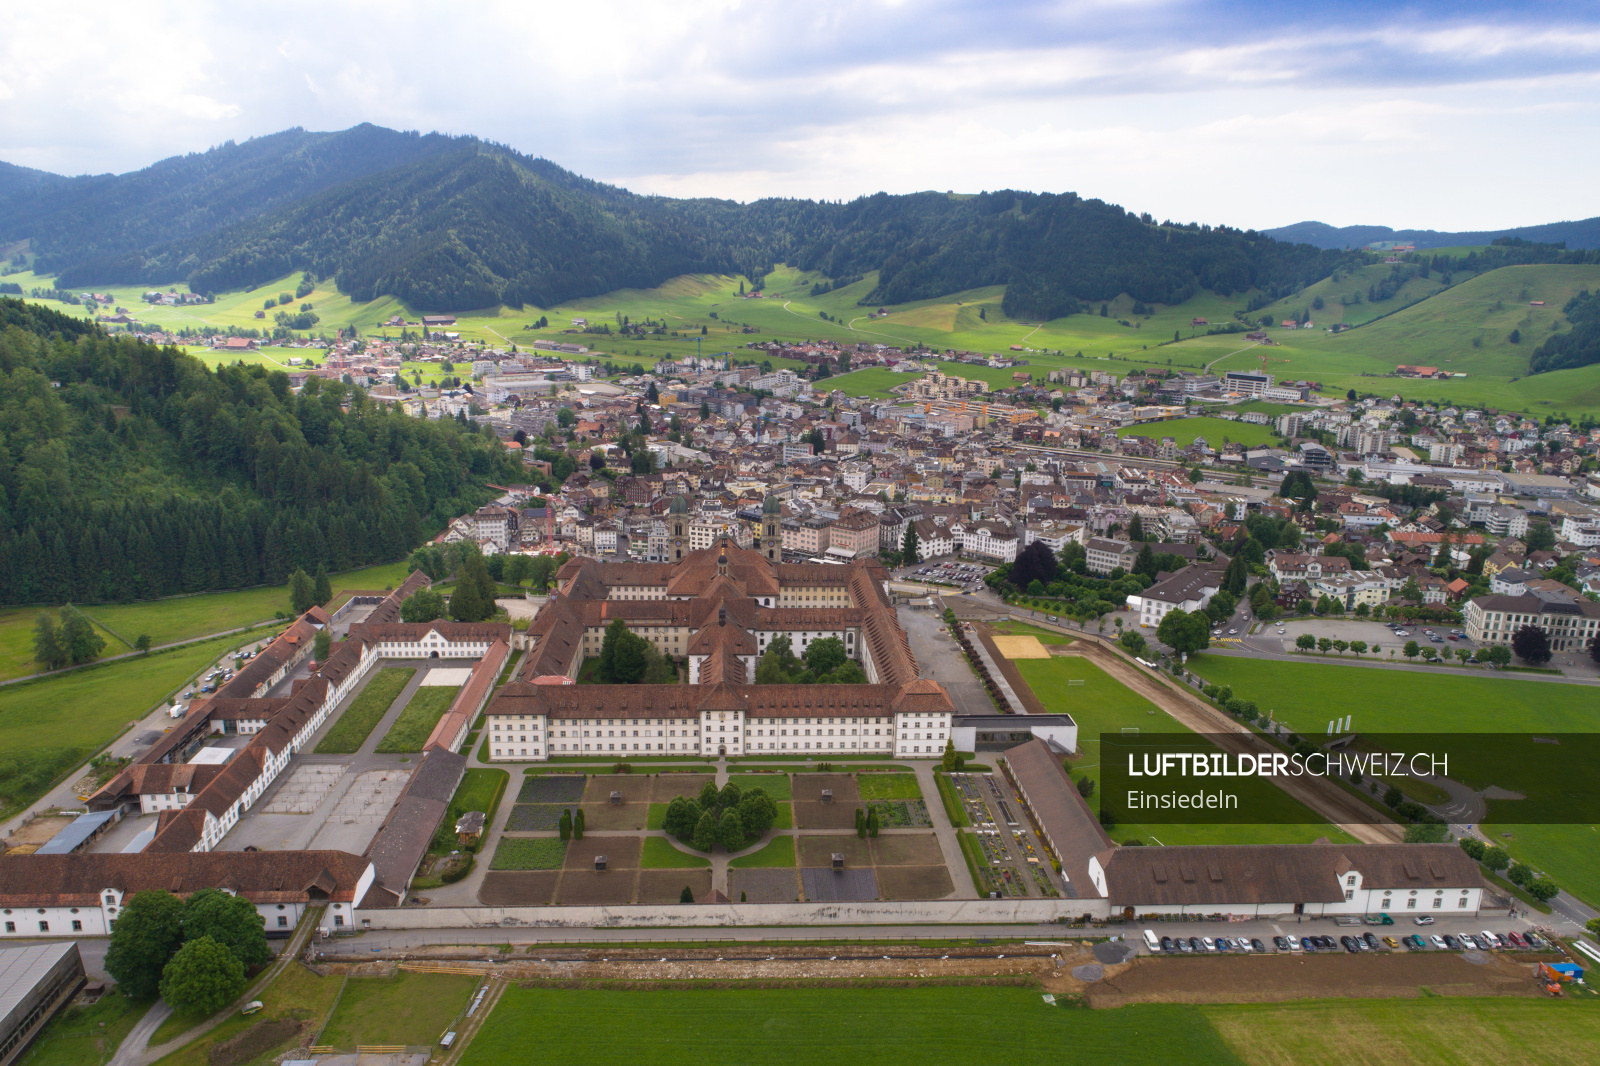 Luftaufnahme Einsiedeln Kloster - Luftbilderschweiz.ch